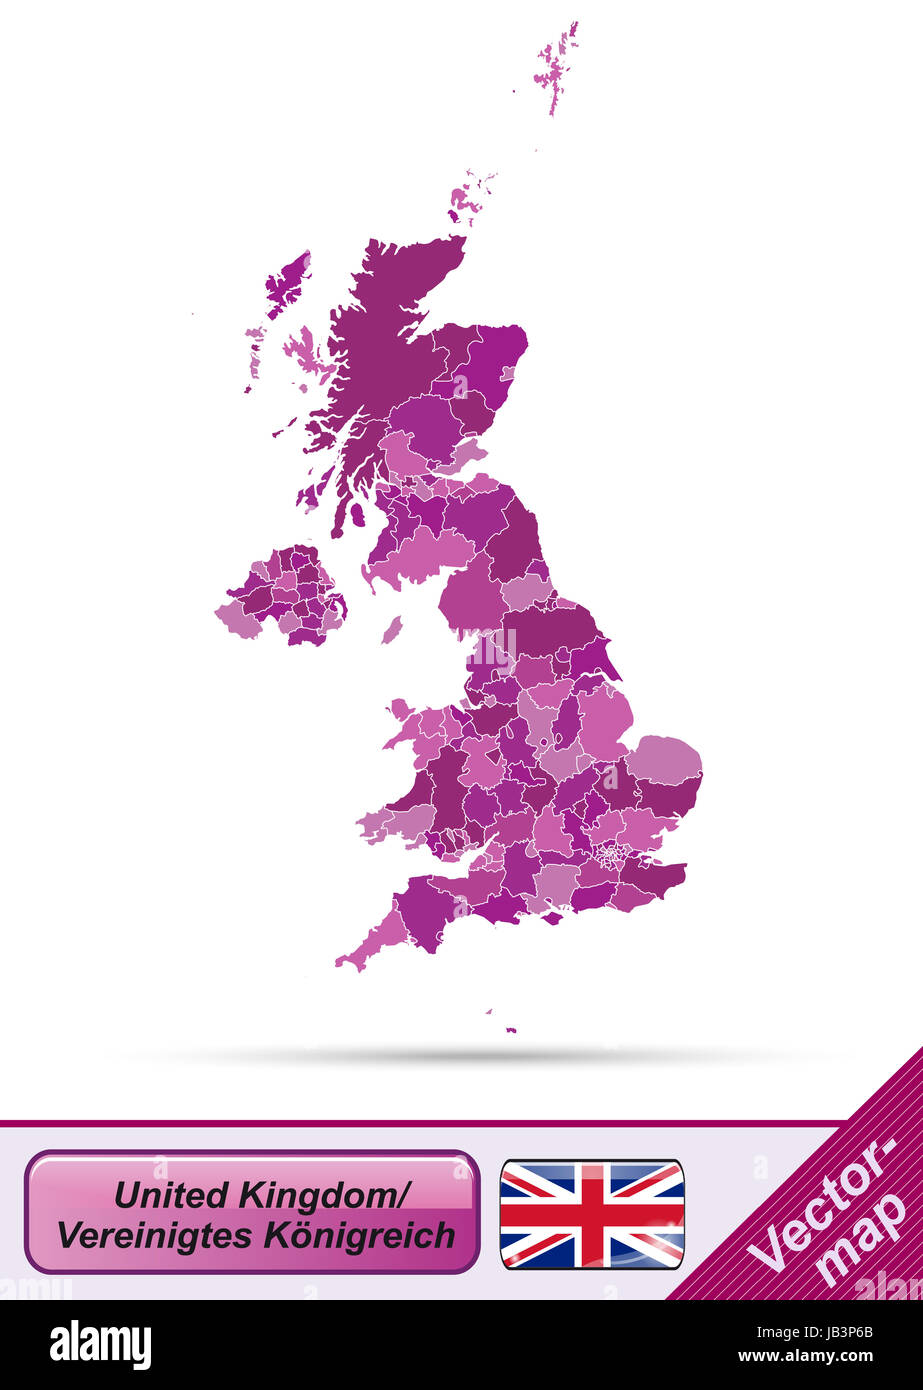 Vereinigtes Königreich en Europa als Grenzkarte mit Grenzen en Violett. Gestaltung fügt ansprechende durch die sich die Karte perfecta en RSI Vorhaben ein. Foto de stock